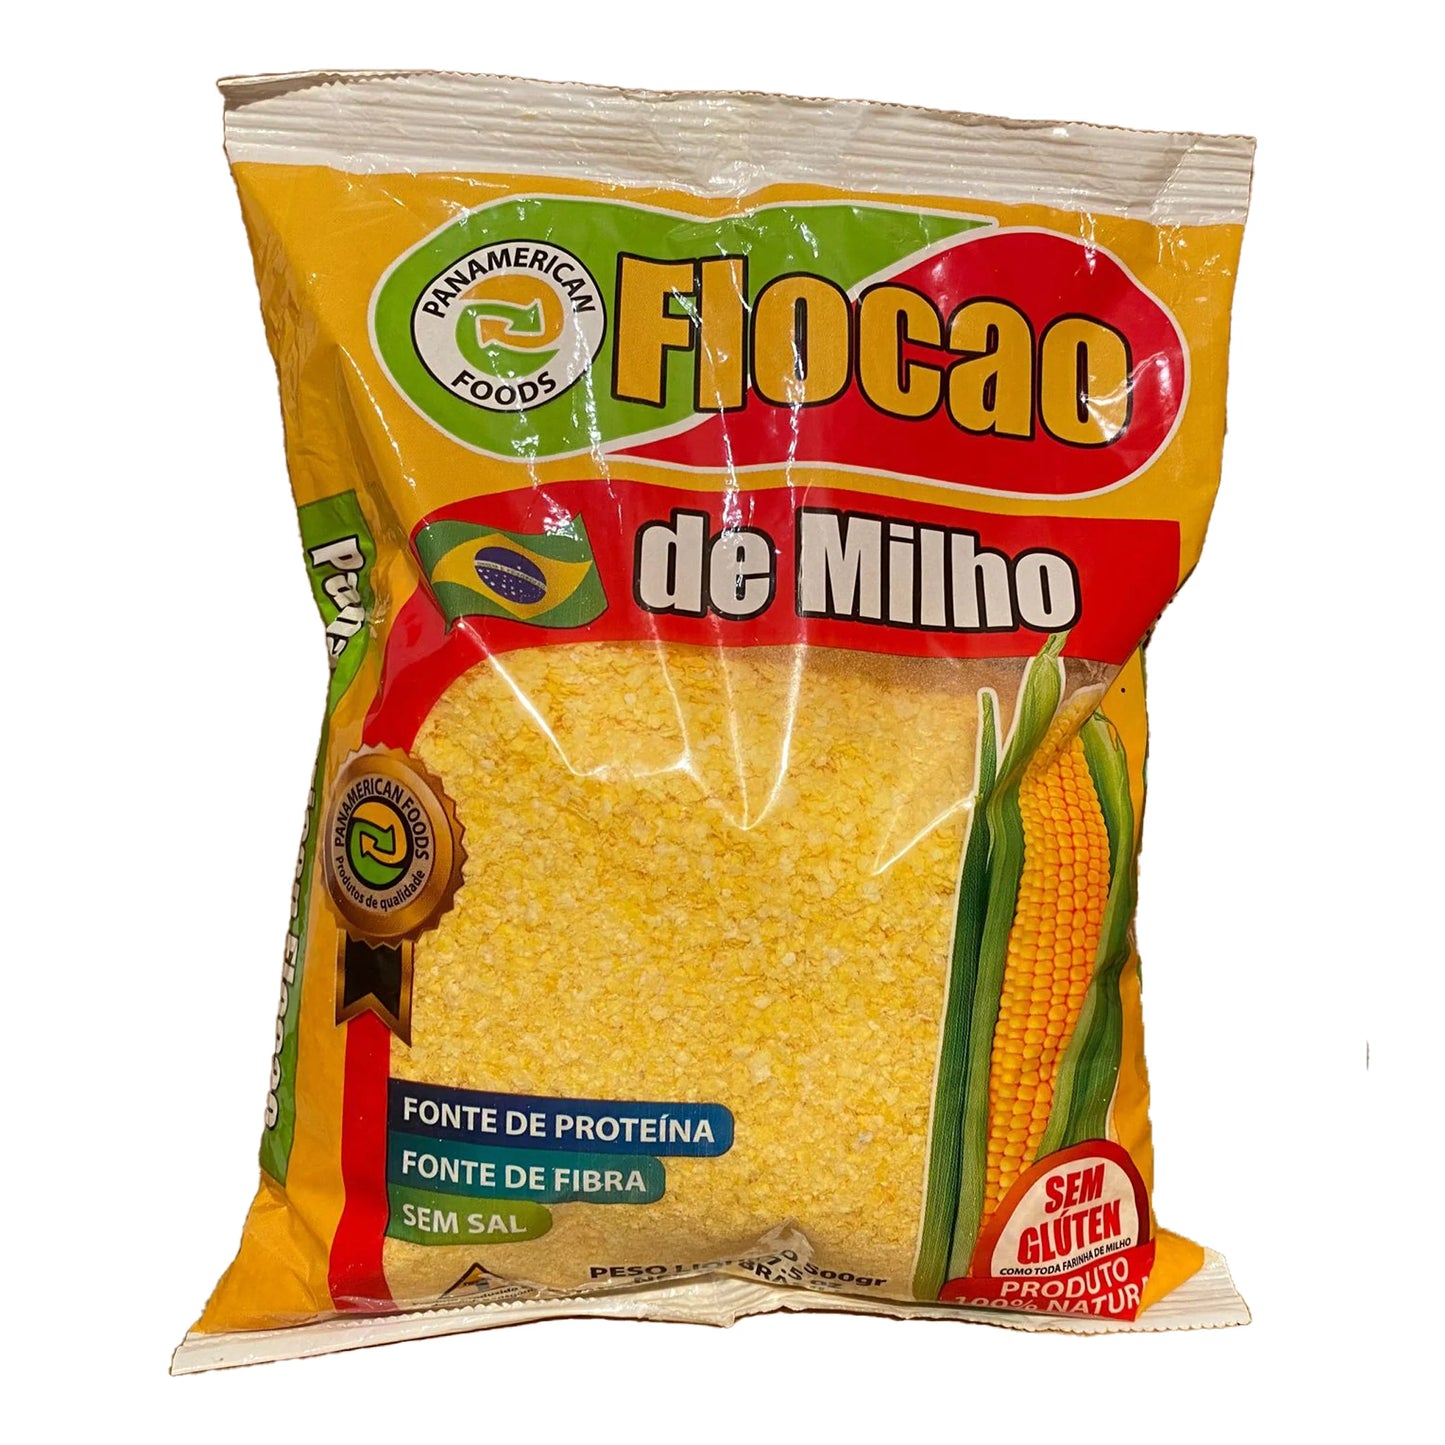 Panamerican Flocao de Milho 500g